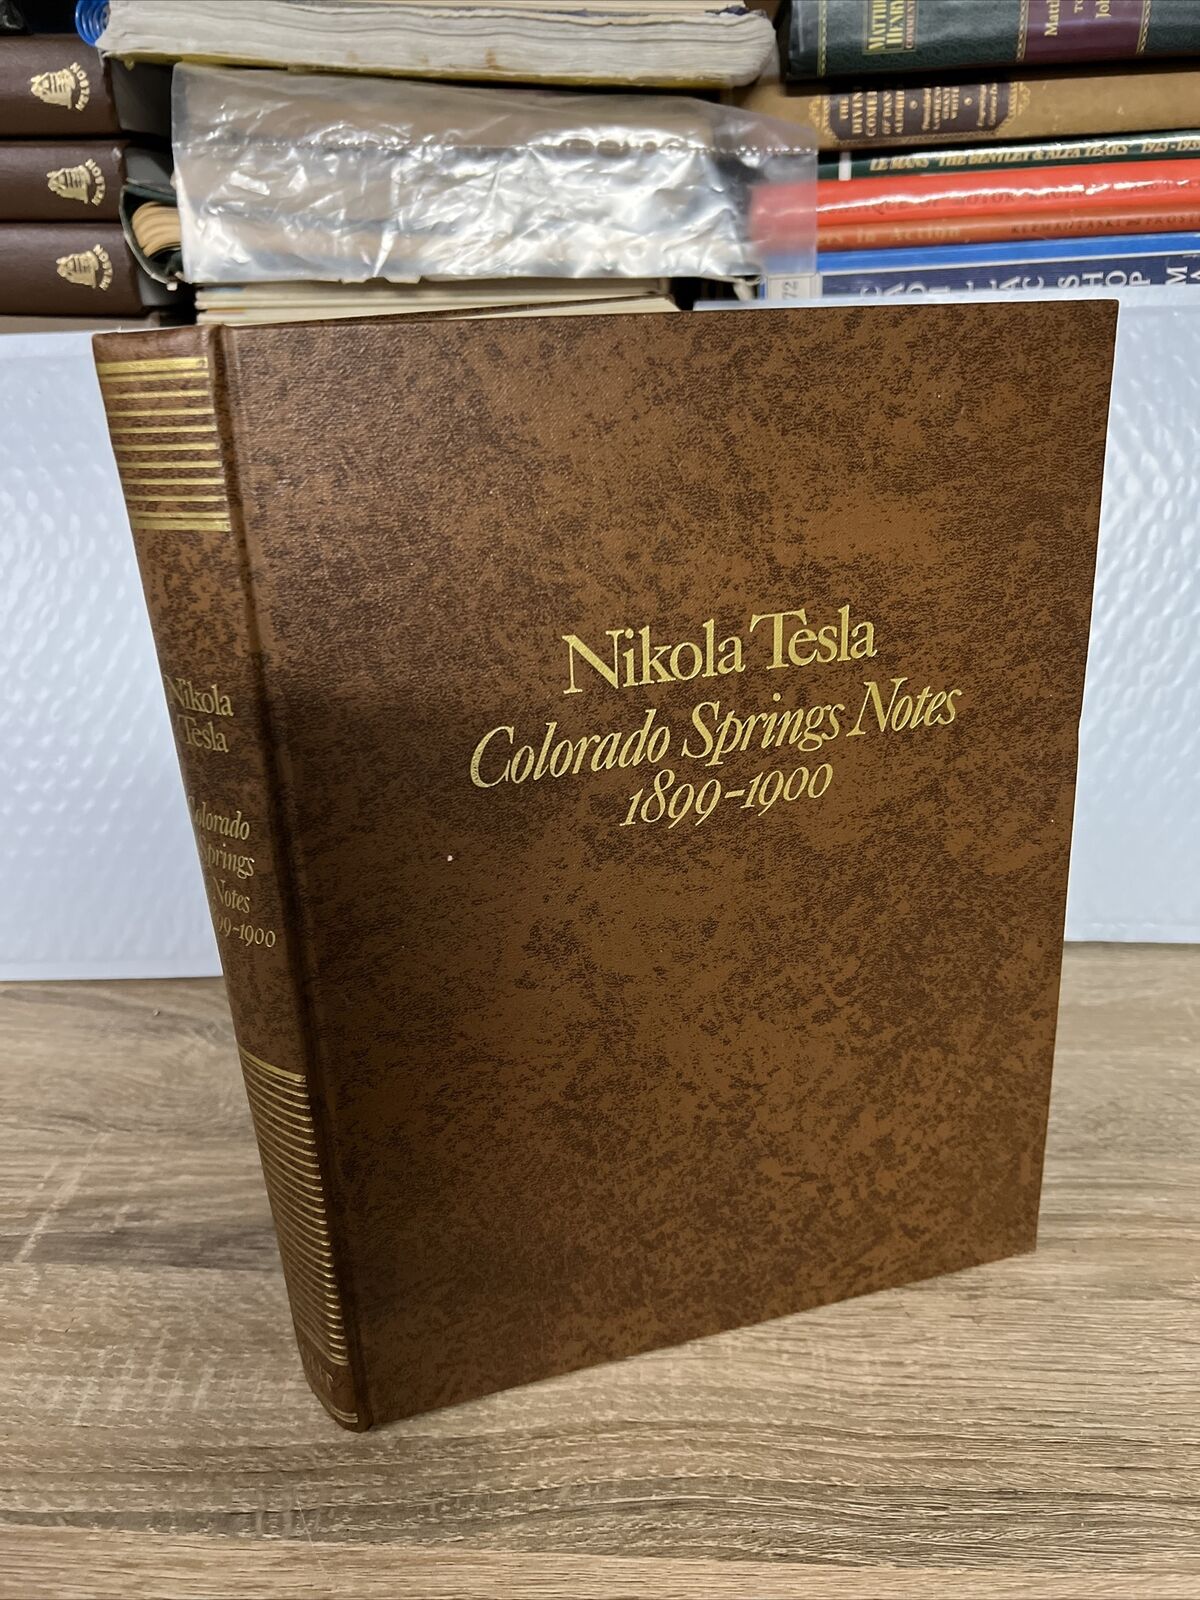 Nikola Tesla Colorado Springs Notes 1899-1900 Q1